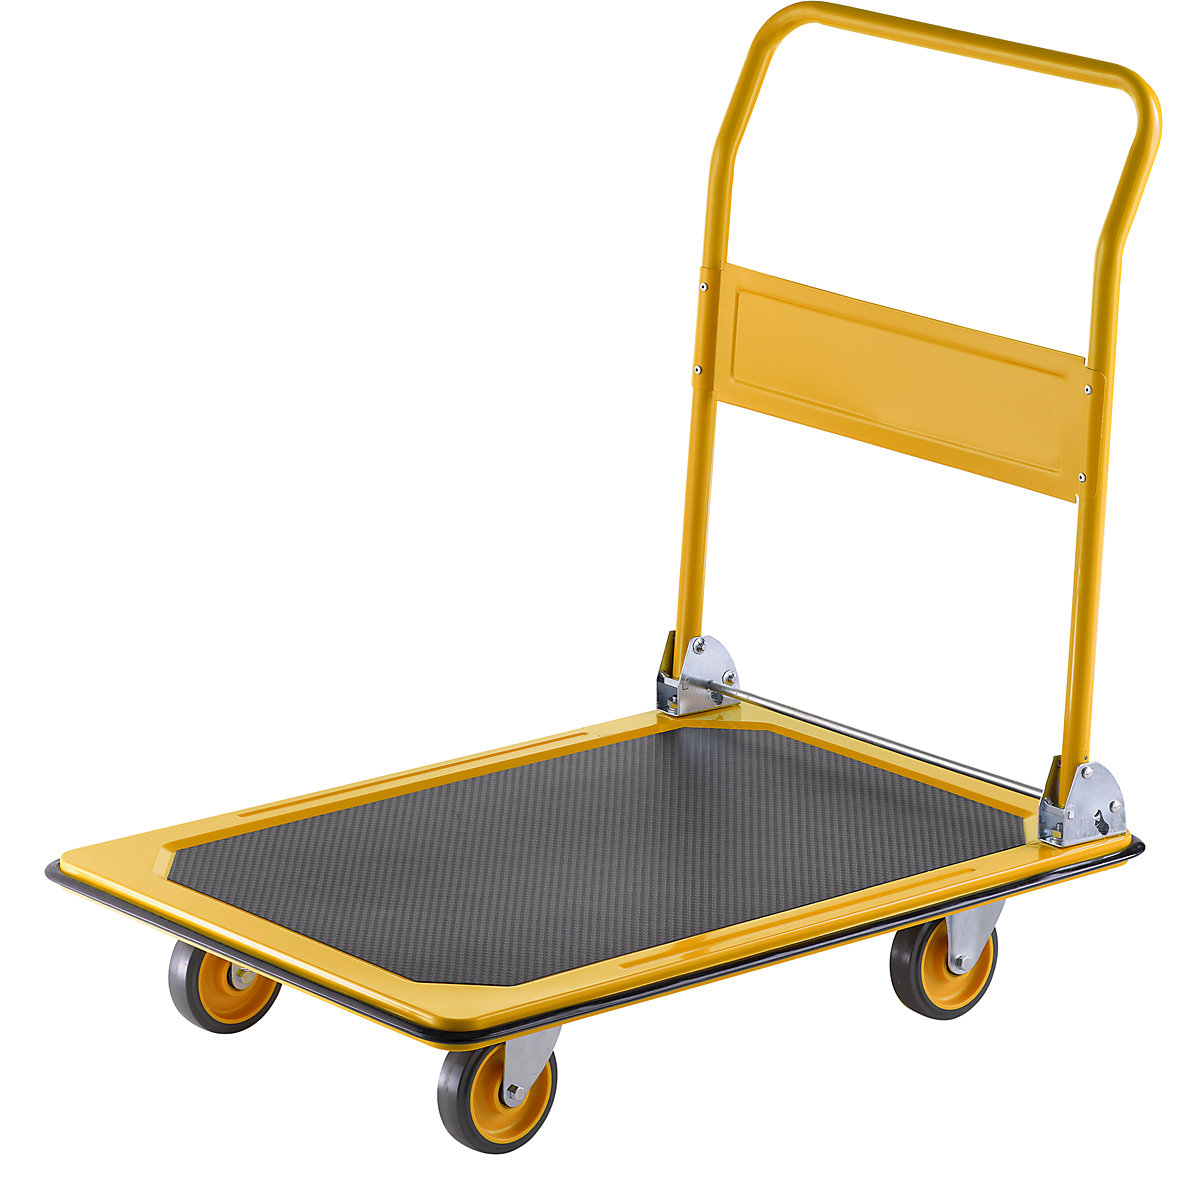 Profesionalna kolica s platformom – eurokraft basic, nosivost 300 kg, u dinja žutoj boji, PU kotači, od 2 kom.-6